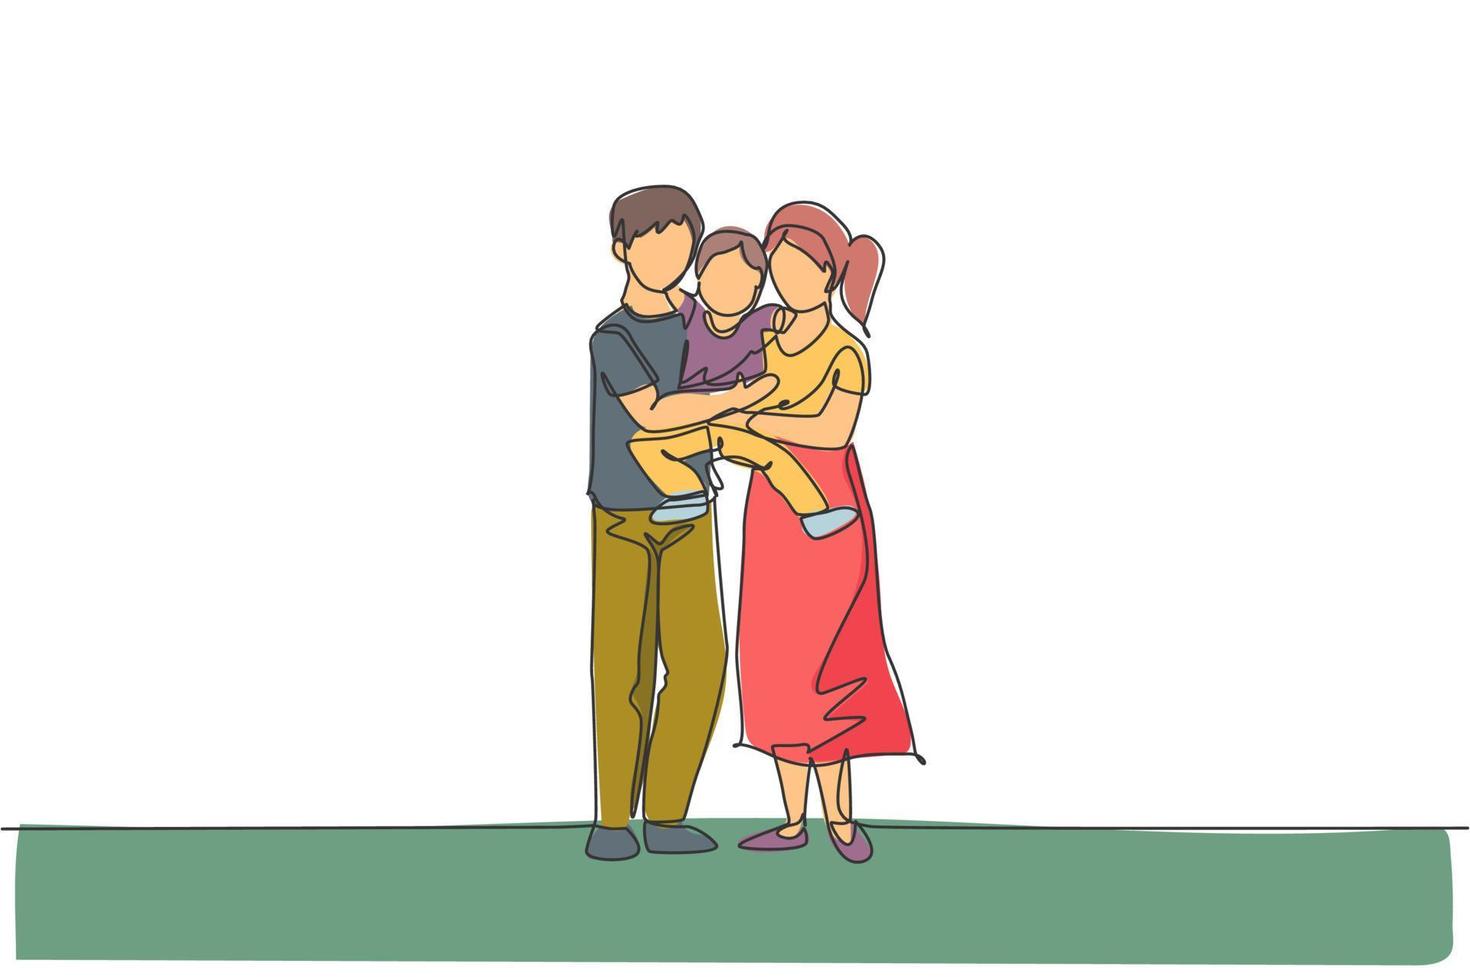 en kontinuerlig radritning ung glad mor och pappa som bär sin son tillsammans full av värme. lyckligt kärleksfullt föräldraskap familjekoncept. dynamisk enkel linje rita design grafisk vektor illustration